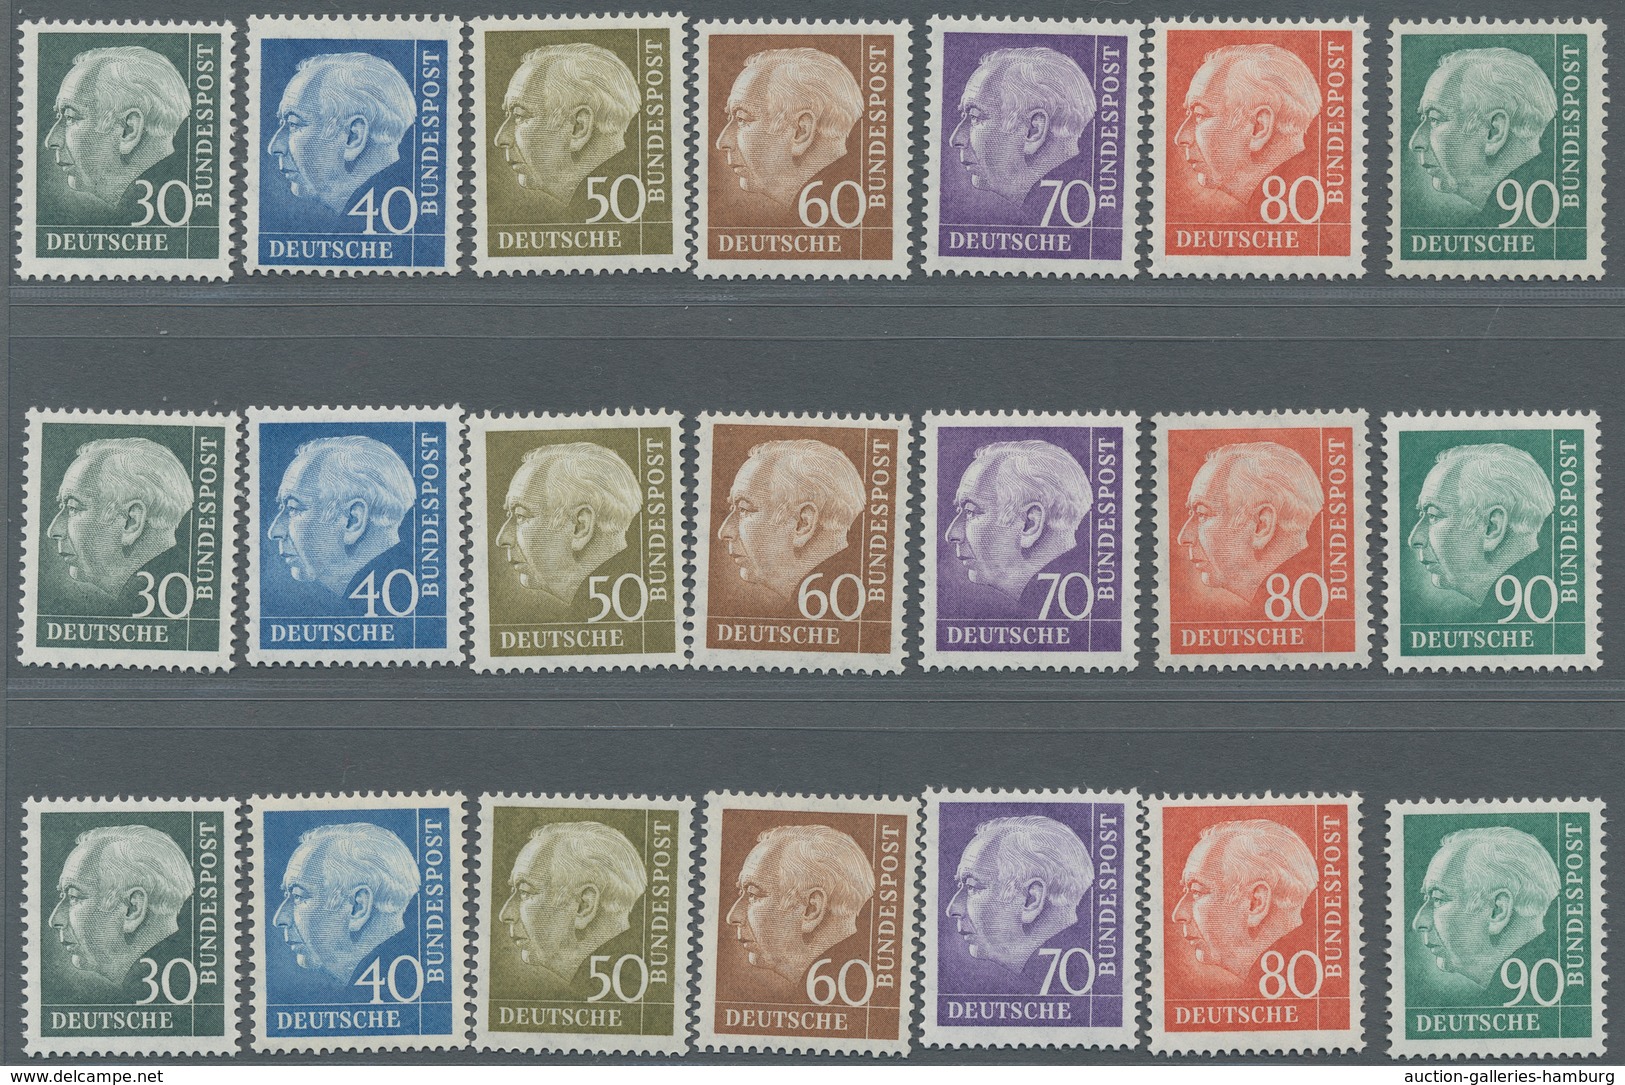 Bundesrepublik Deutschland: 1956, Heuss II, 11 Kpl. Postfrische Sätze, Zusätzlich Noch 9 Mal Höchstw - Covers & Documents